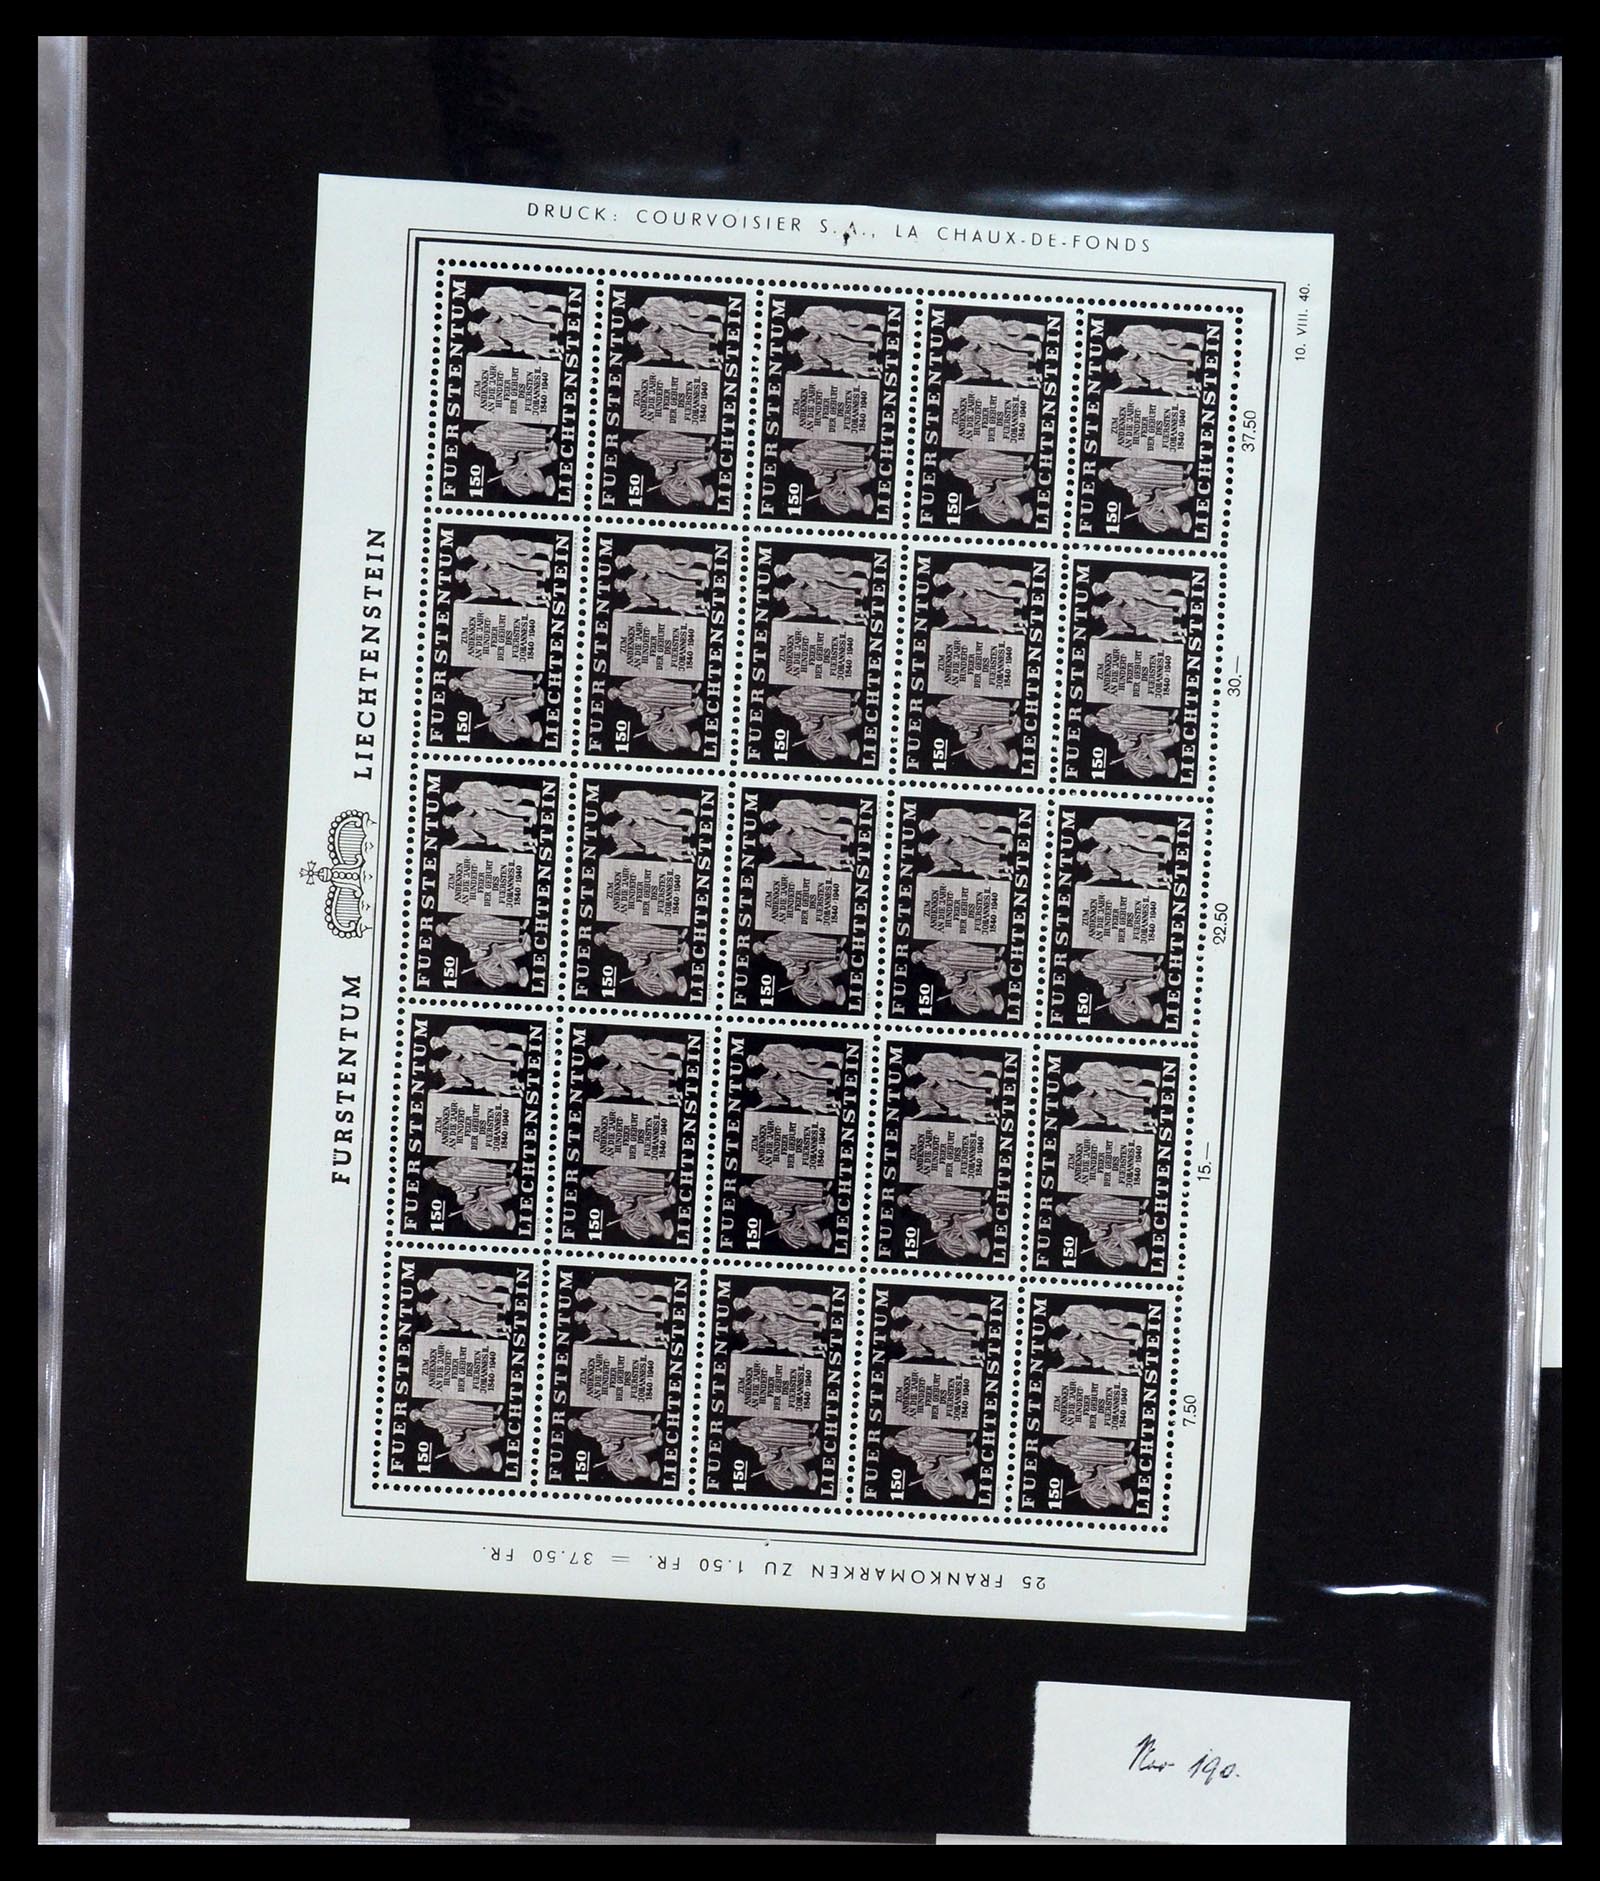 36280 013 - Stamp collection 36280 Liechtenstein souvenir sheets and sheetlets 1934-